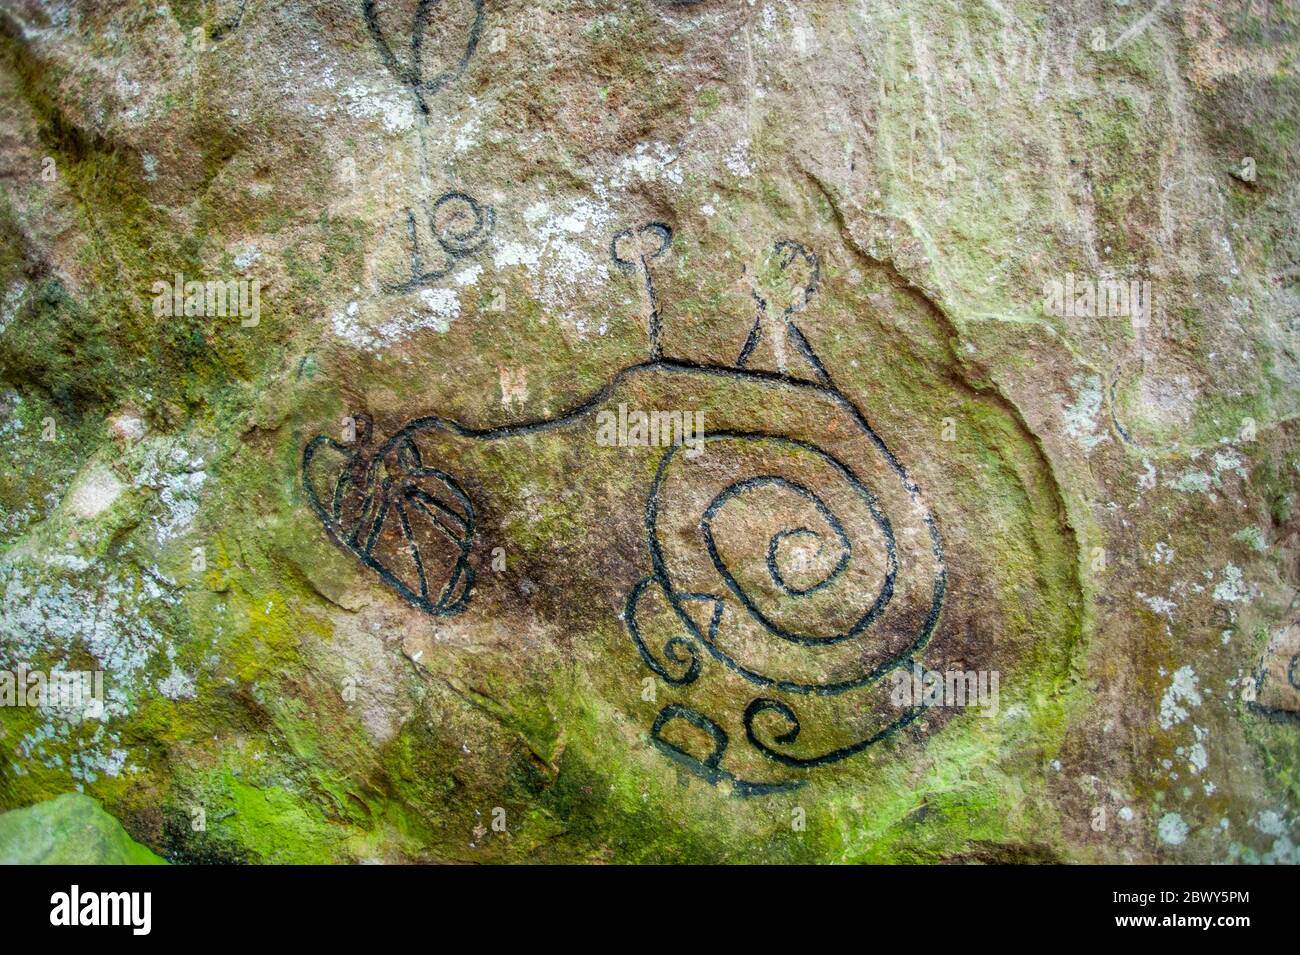 Pétroglyphes et sculptures sur Piedra Pintada, un rocher géant, dans la Valle de Anton près de Panama City, Panama datant de l'époque pré-colombienne possible Banque D'Images